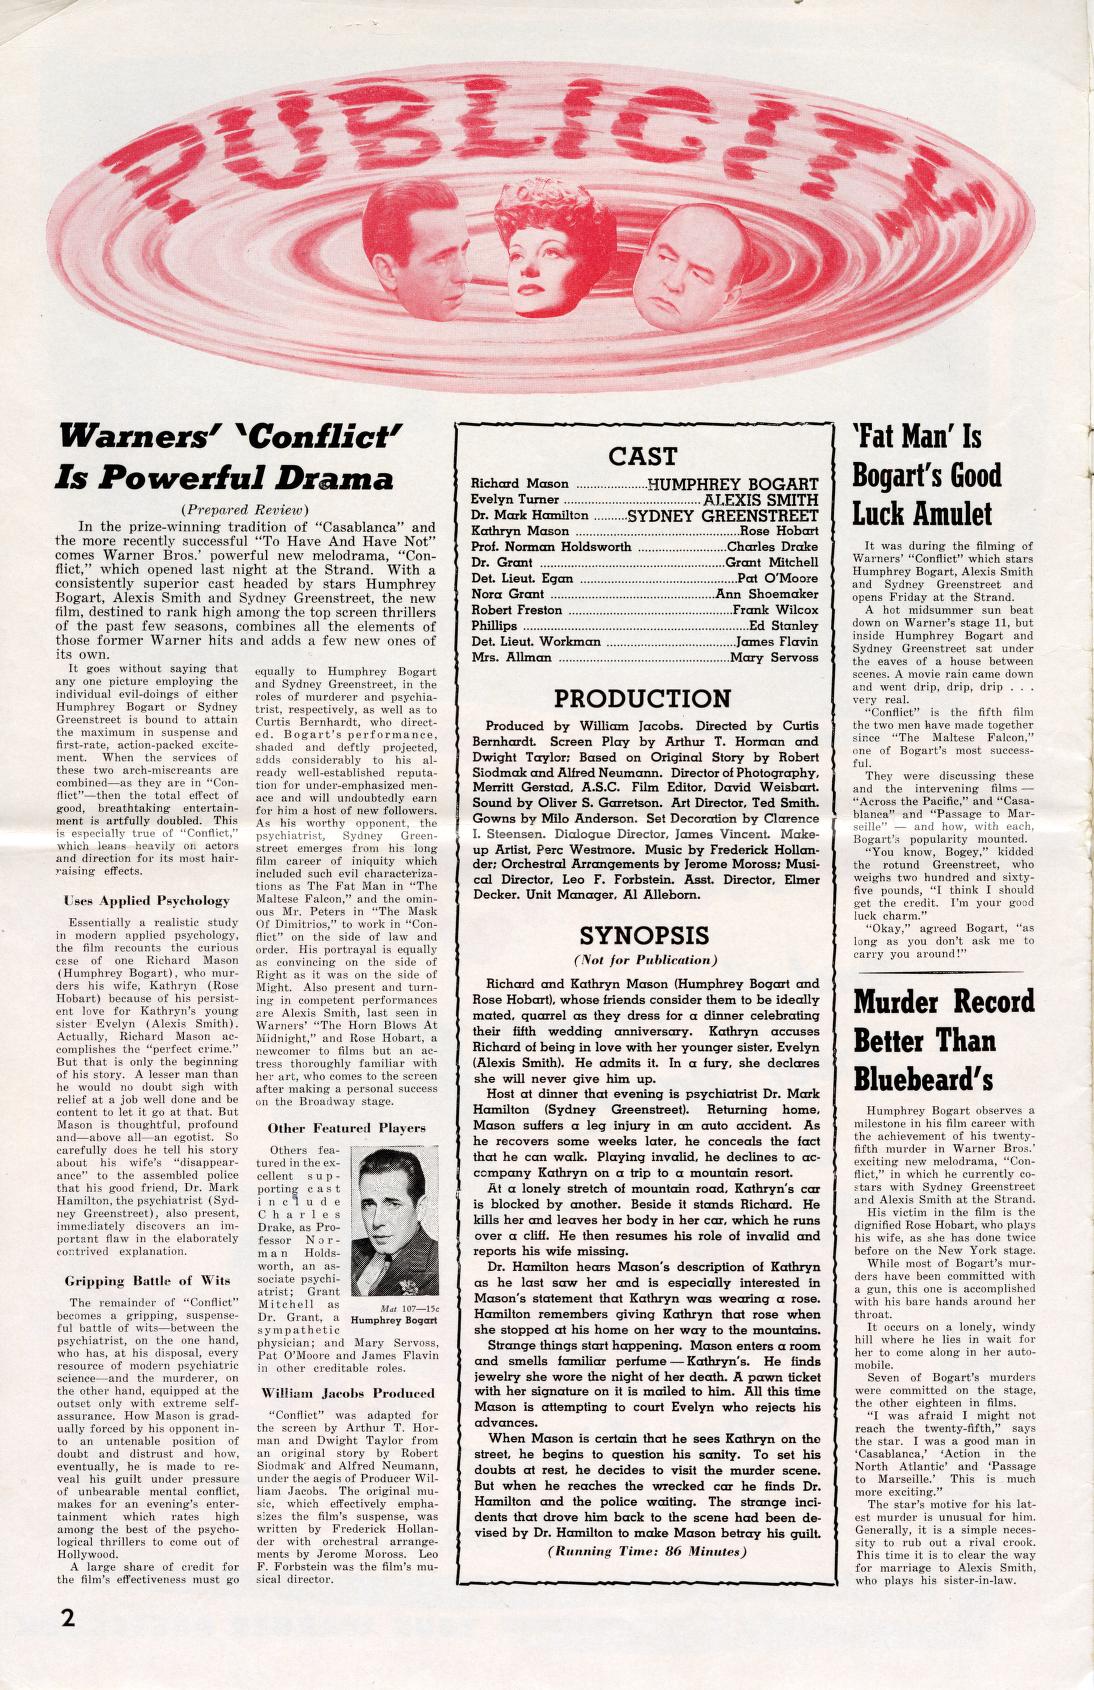 Conflict (Warner Bros. Pressbook, 1945)